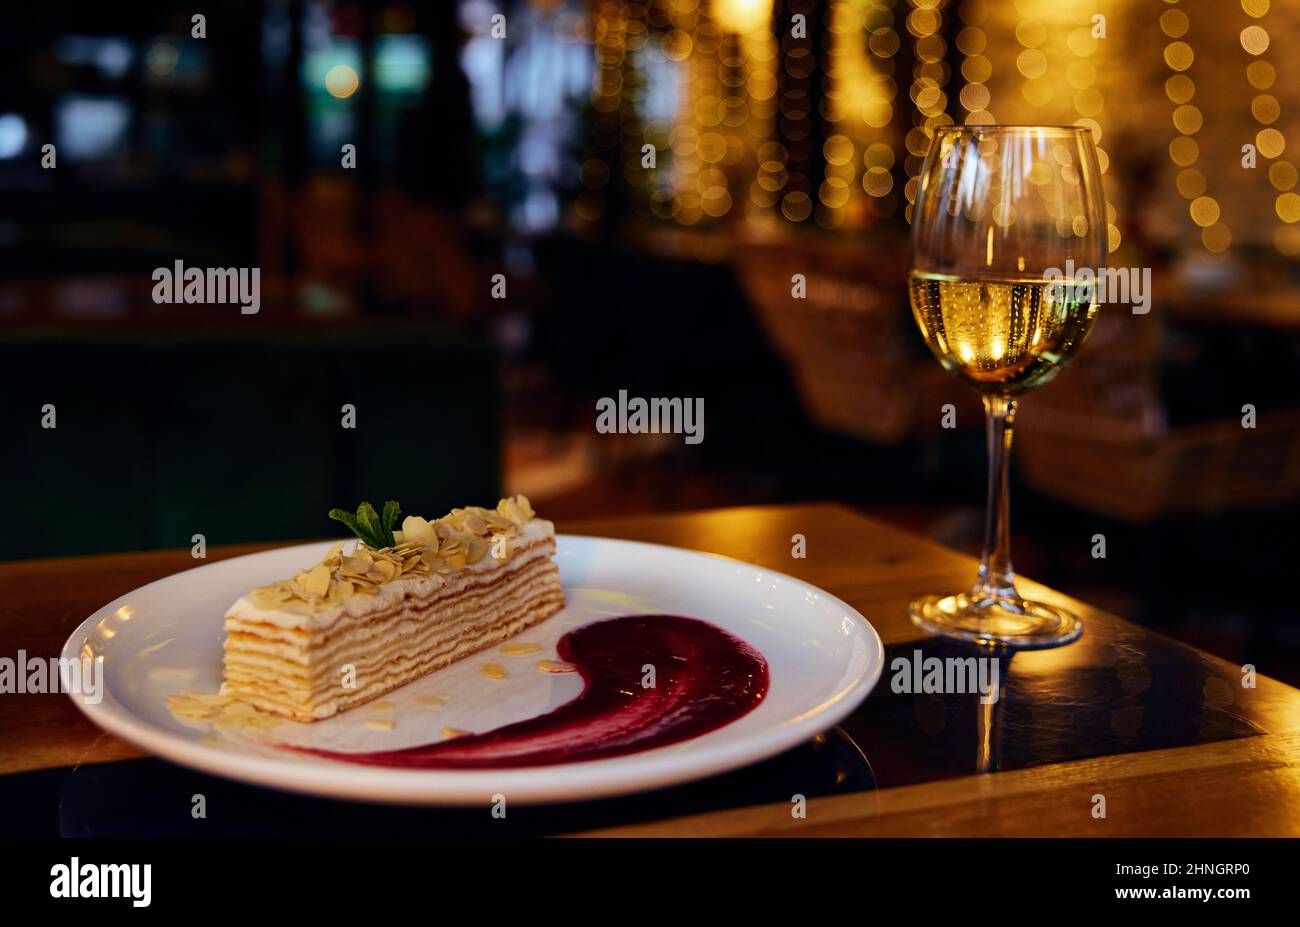 Un verre de vin blanc et un gâteau italien Napoléon et un sirop de fraise dans la plaque en céramique blanche sur une table de restaurant avec éclairage réflecte Banque D'Images